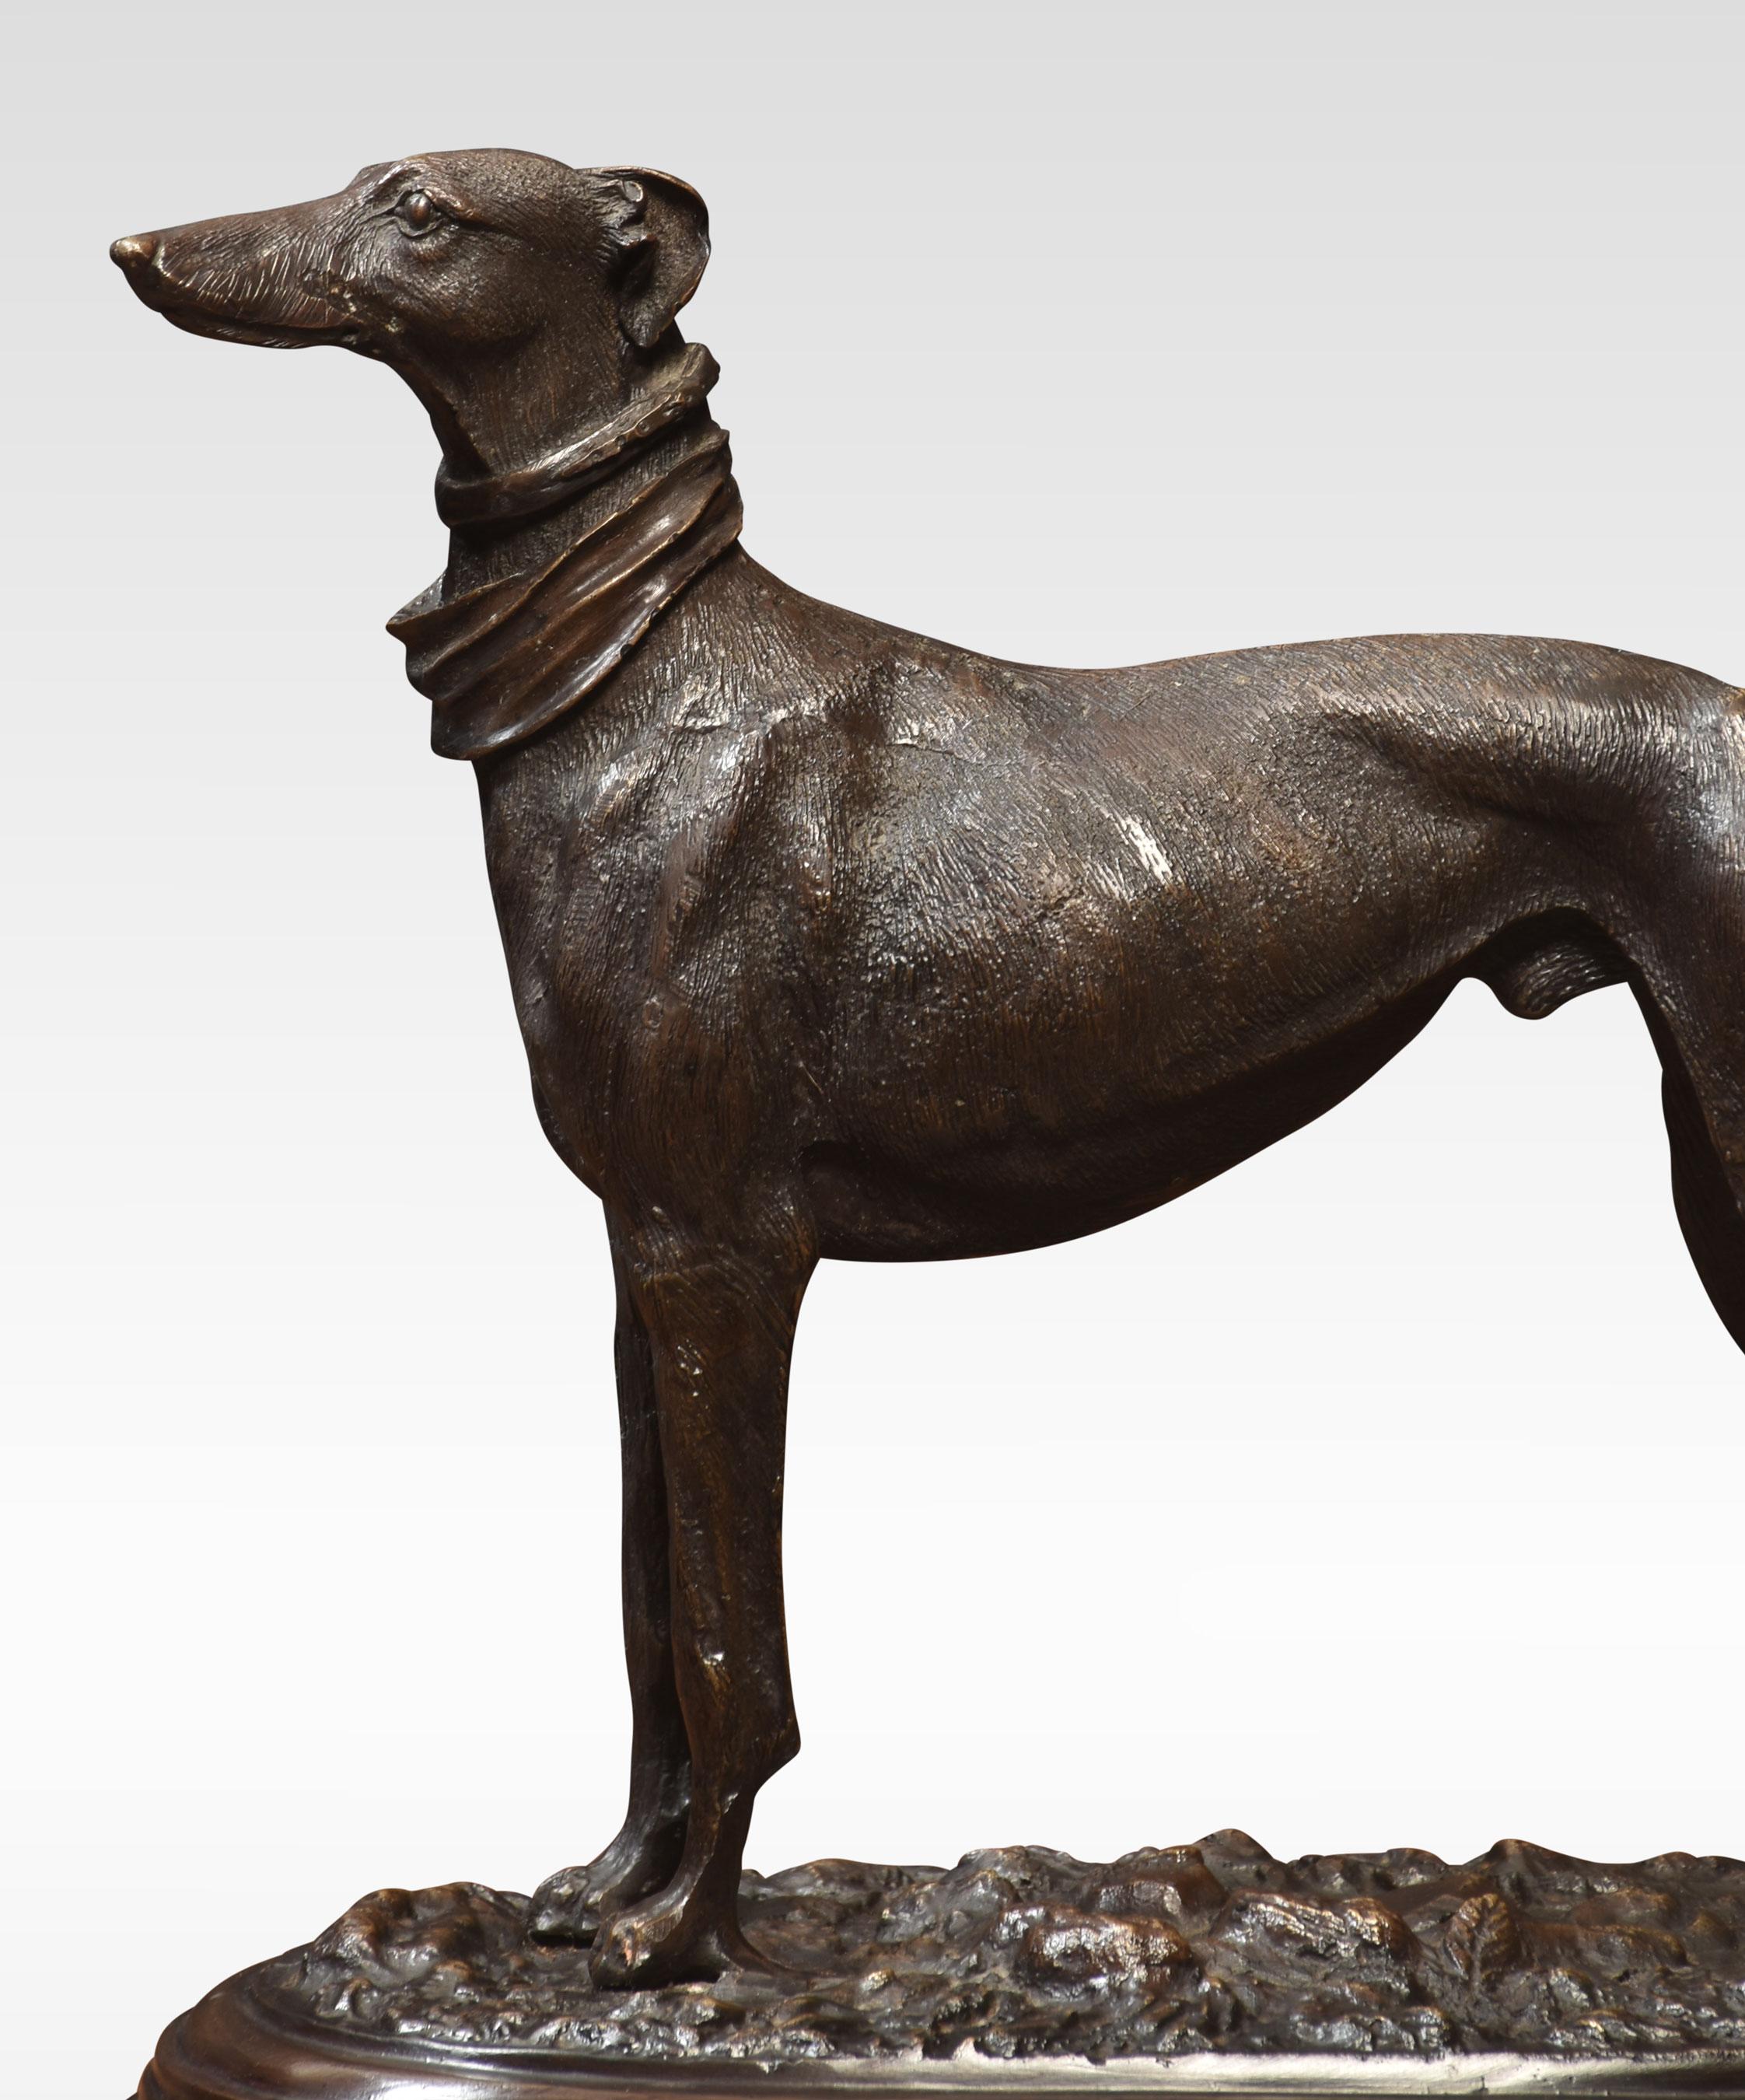 Sculpture en bronze d'un Greyhound surélevé sur un socle en marbre.
Dimensions
Hauteur 11,5 pouces
Longueur 12,5 pouces
Largeur 7,5 pouces